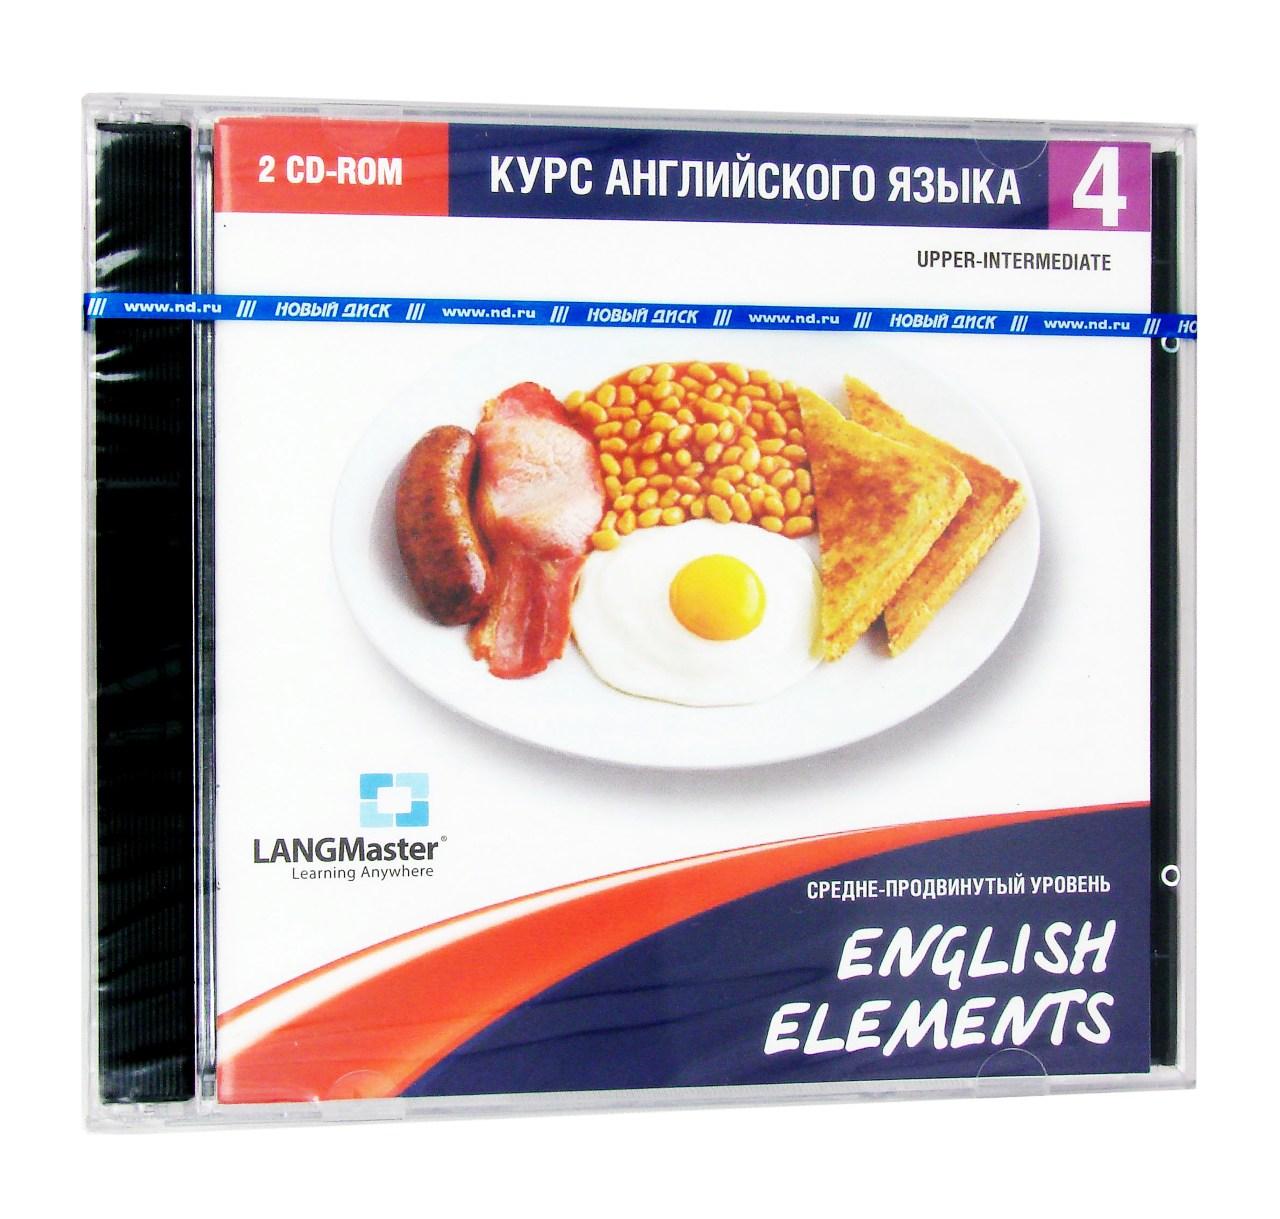 Компьютерный компакт-диск English Elements. Средне-продвинутый уровень (ПК), фирма "Новый диск", 2CD